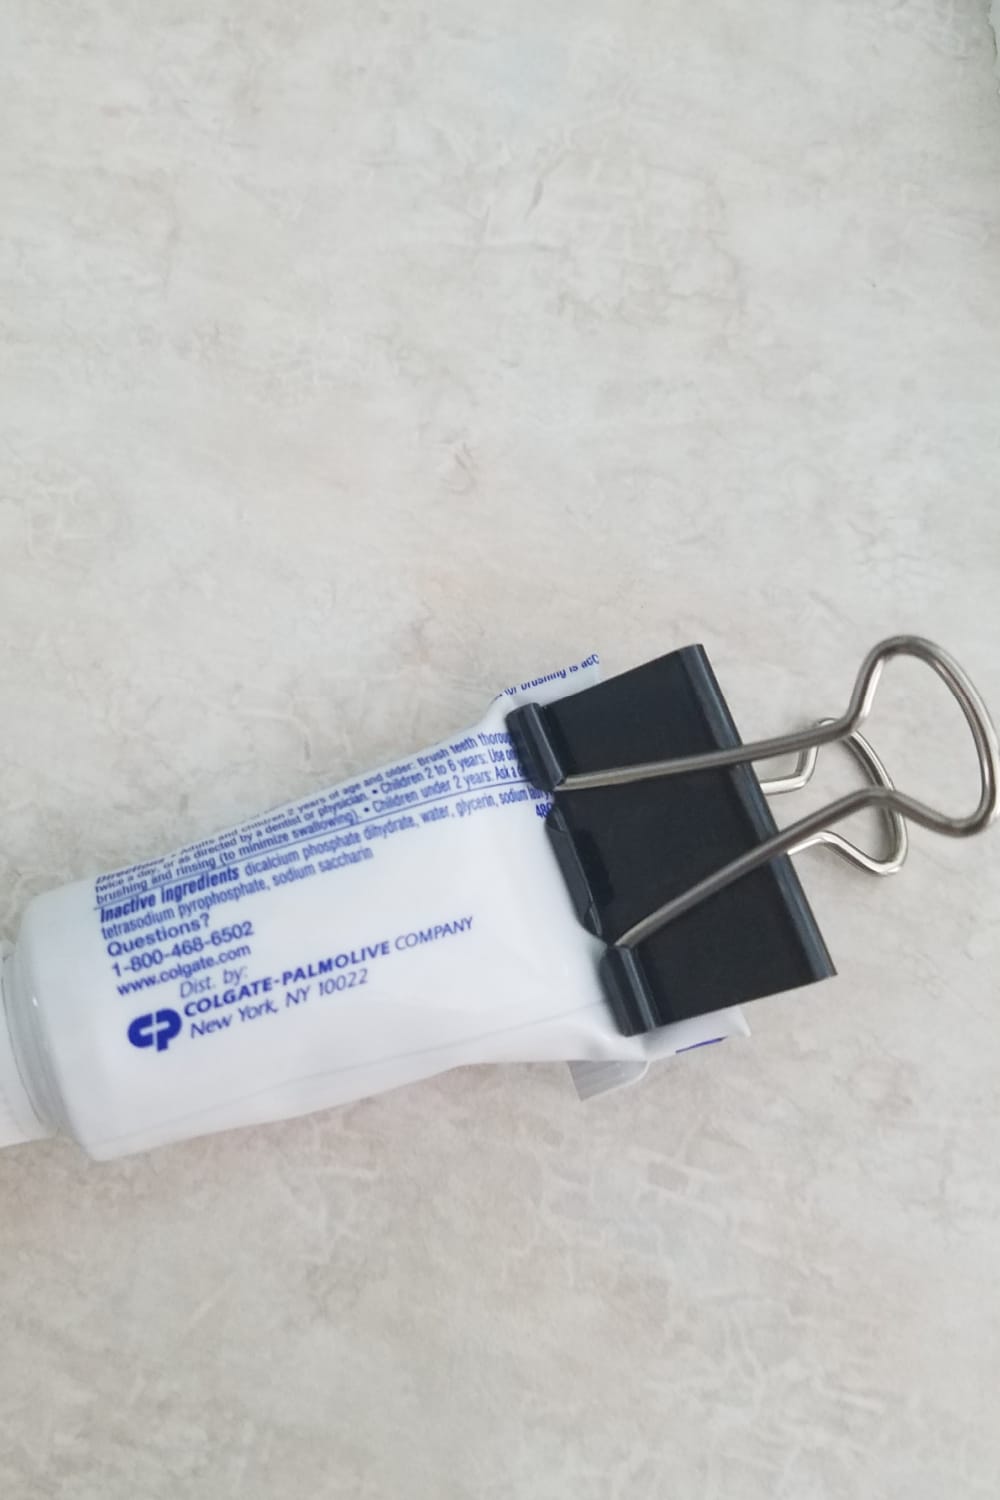 toothpaste holder binder clip